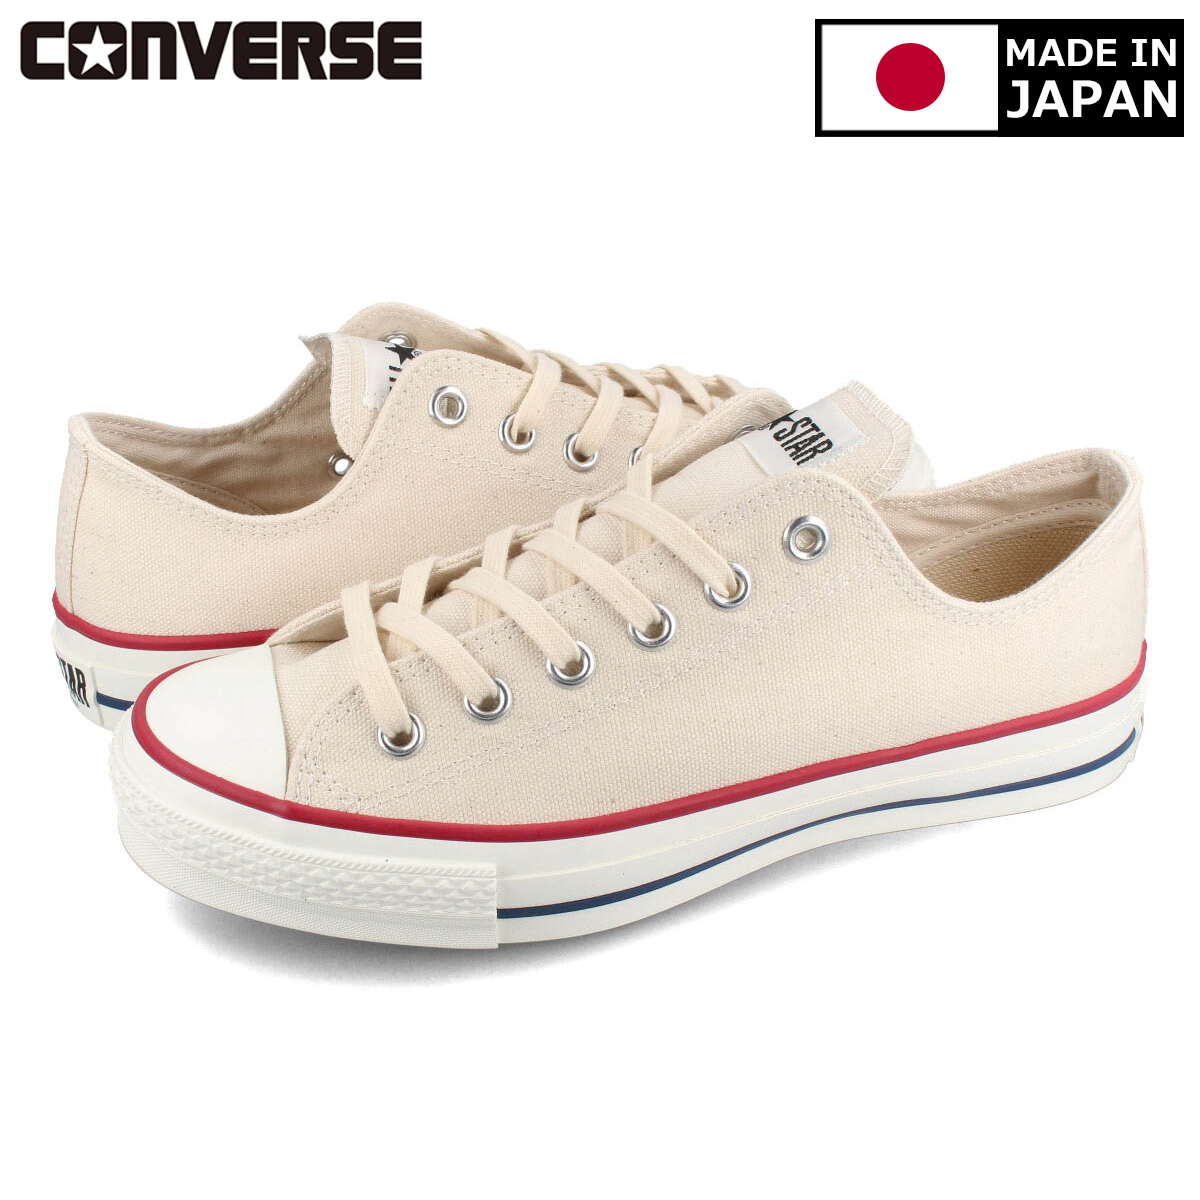 送料無料 CONVERSE コンバース メンズ 靴 スニーカー MADE IN JAPAN メイド イン NATURAL オールスター ファクトリーアウトレット ジャパン 日本製 WHITE OX J 人気海外一番 CANVAS STAR ALL 32167710